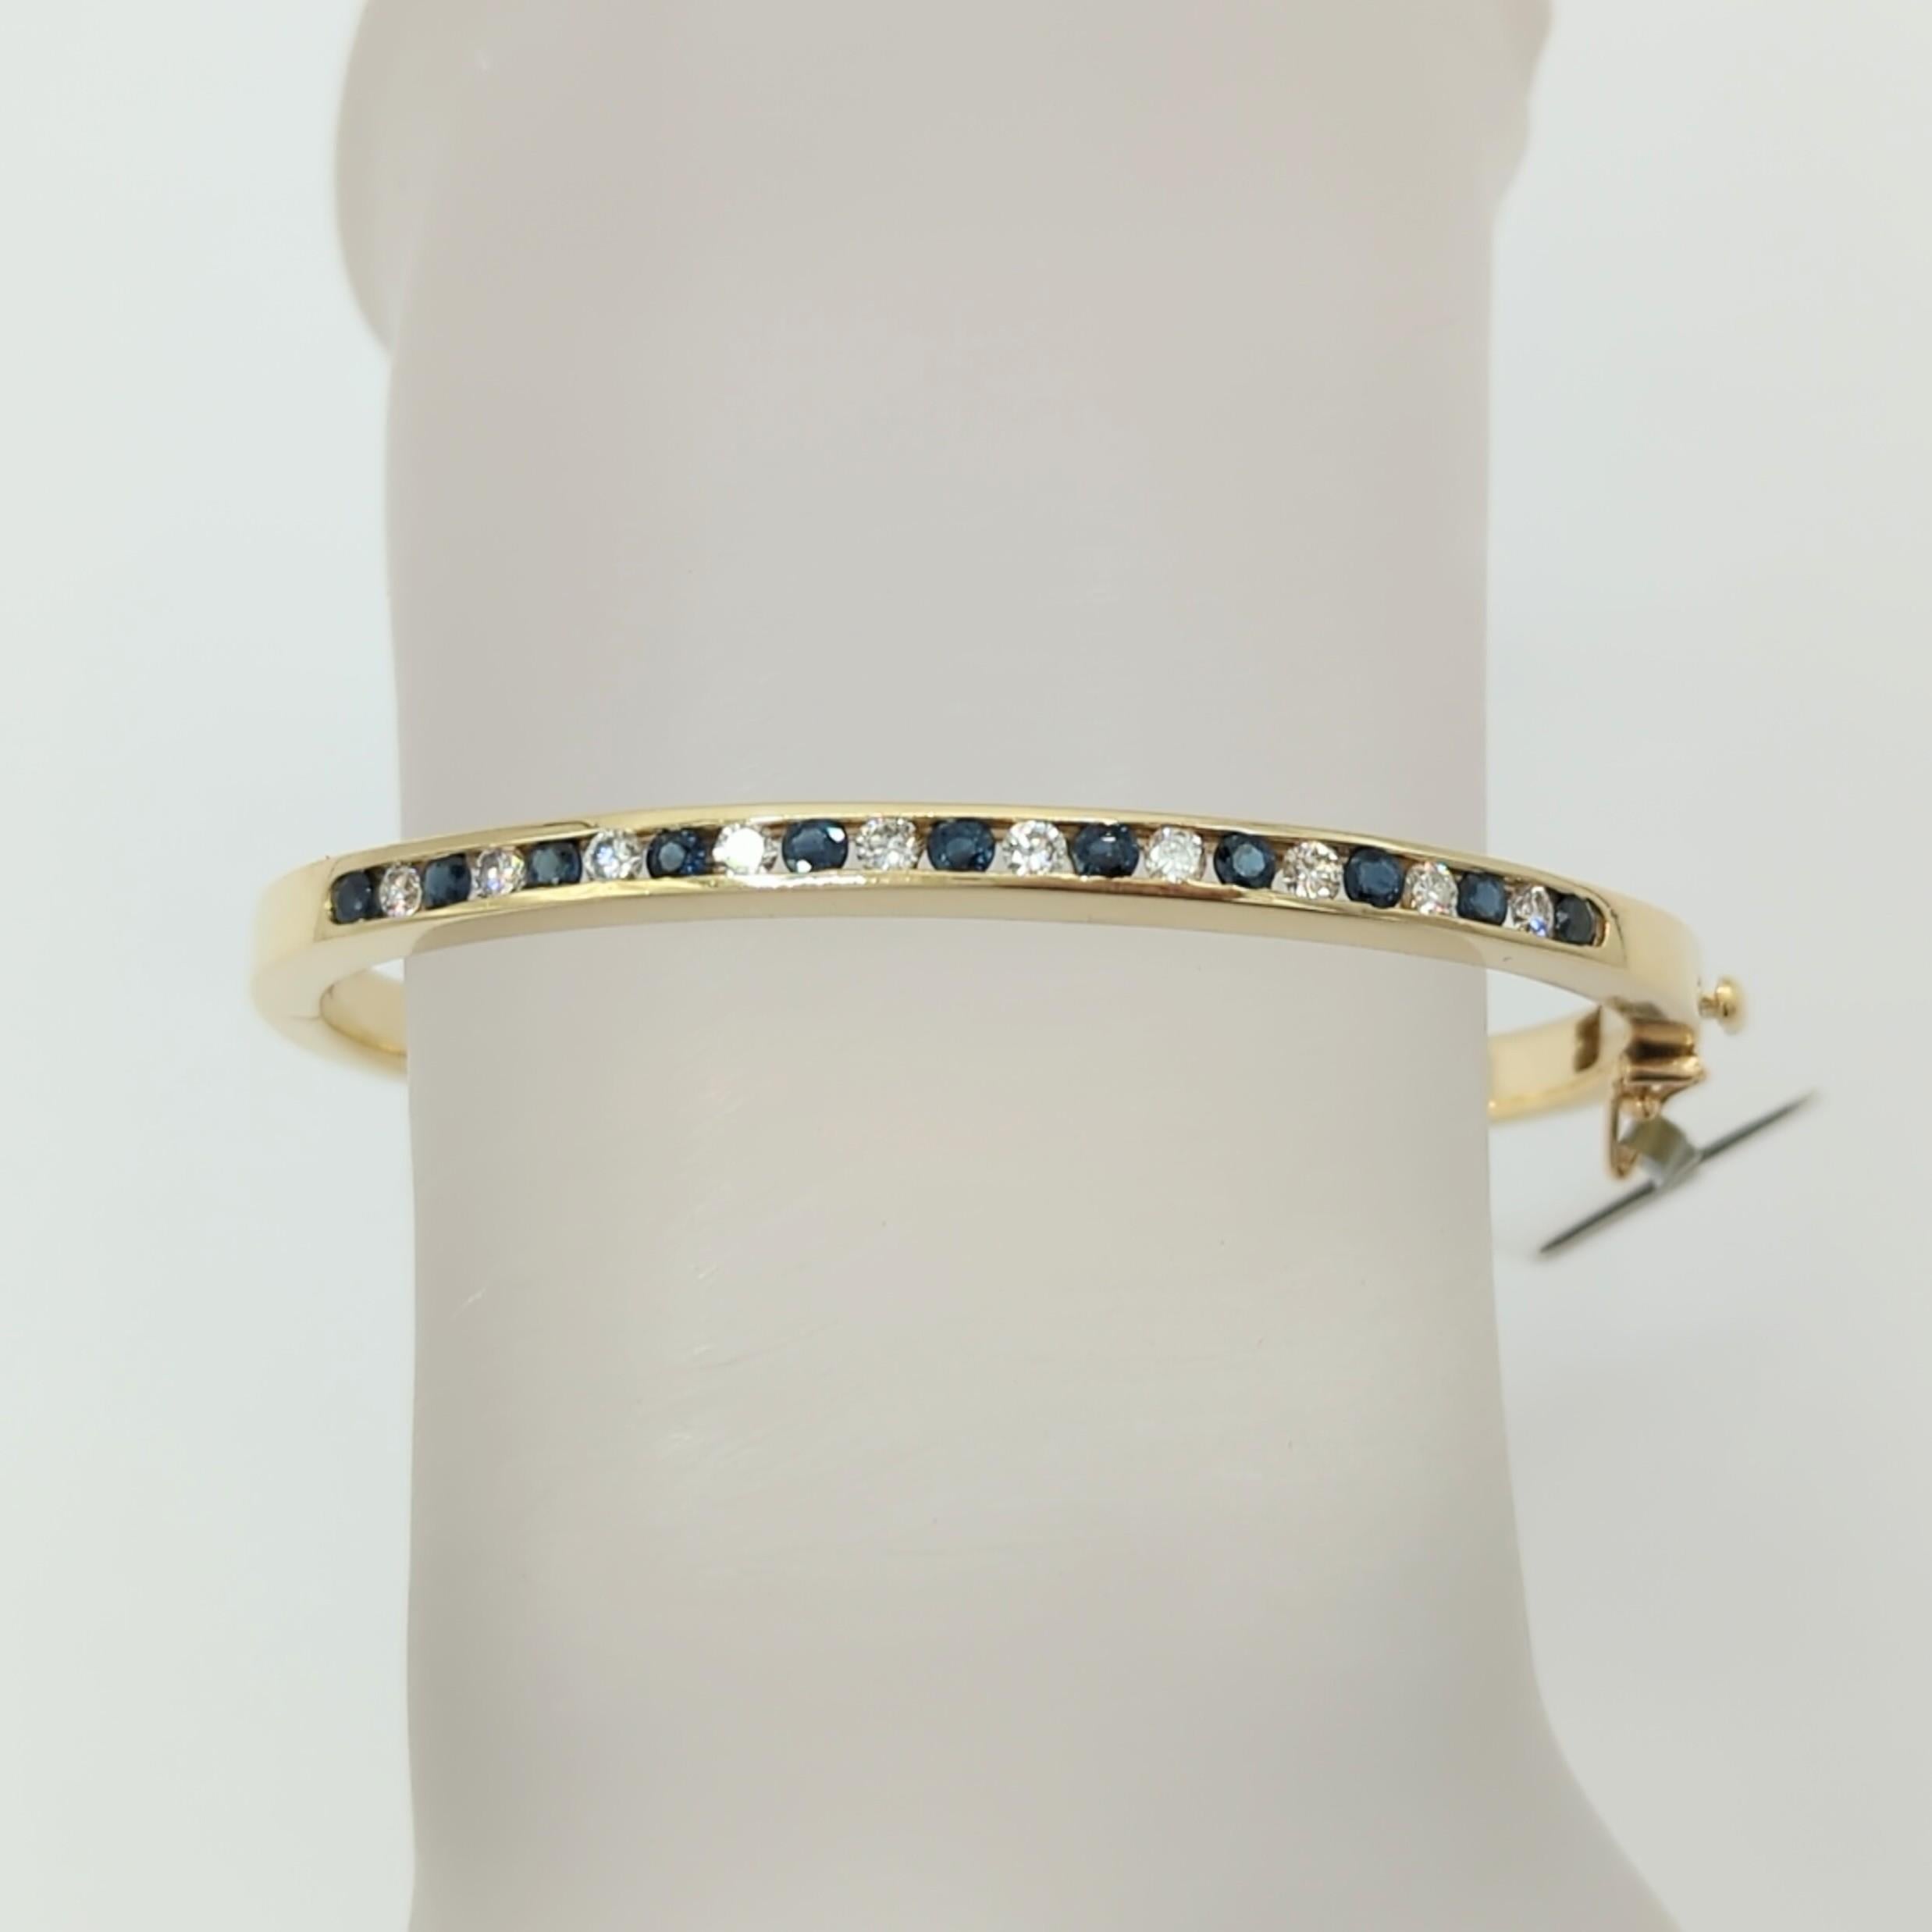 Magnifique bracelet avec des ronds de diamants blancs de bonne qualité et des ronds de saphirs bleus.  Fabriqué à la main en or jaune 14k.  Parfait pour être empilé ou porté seul.